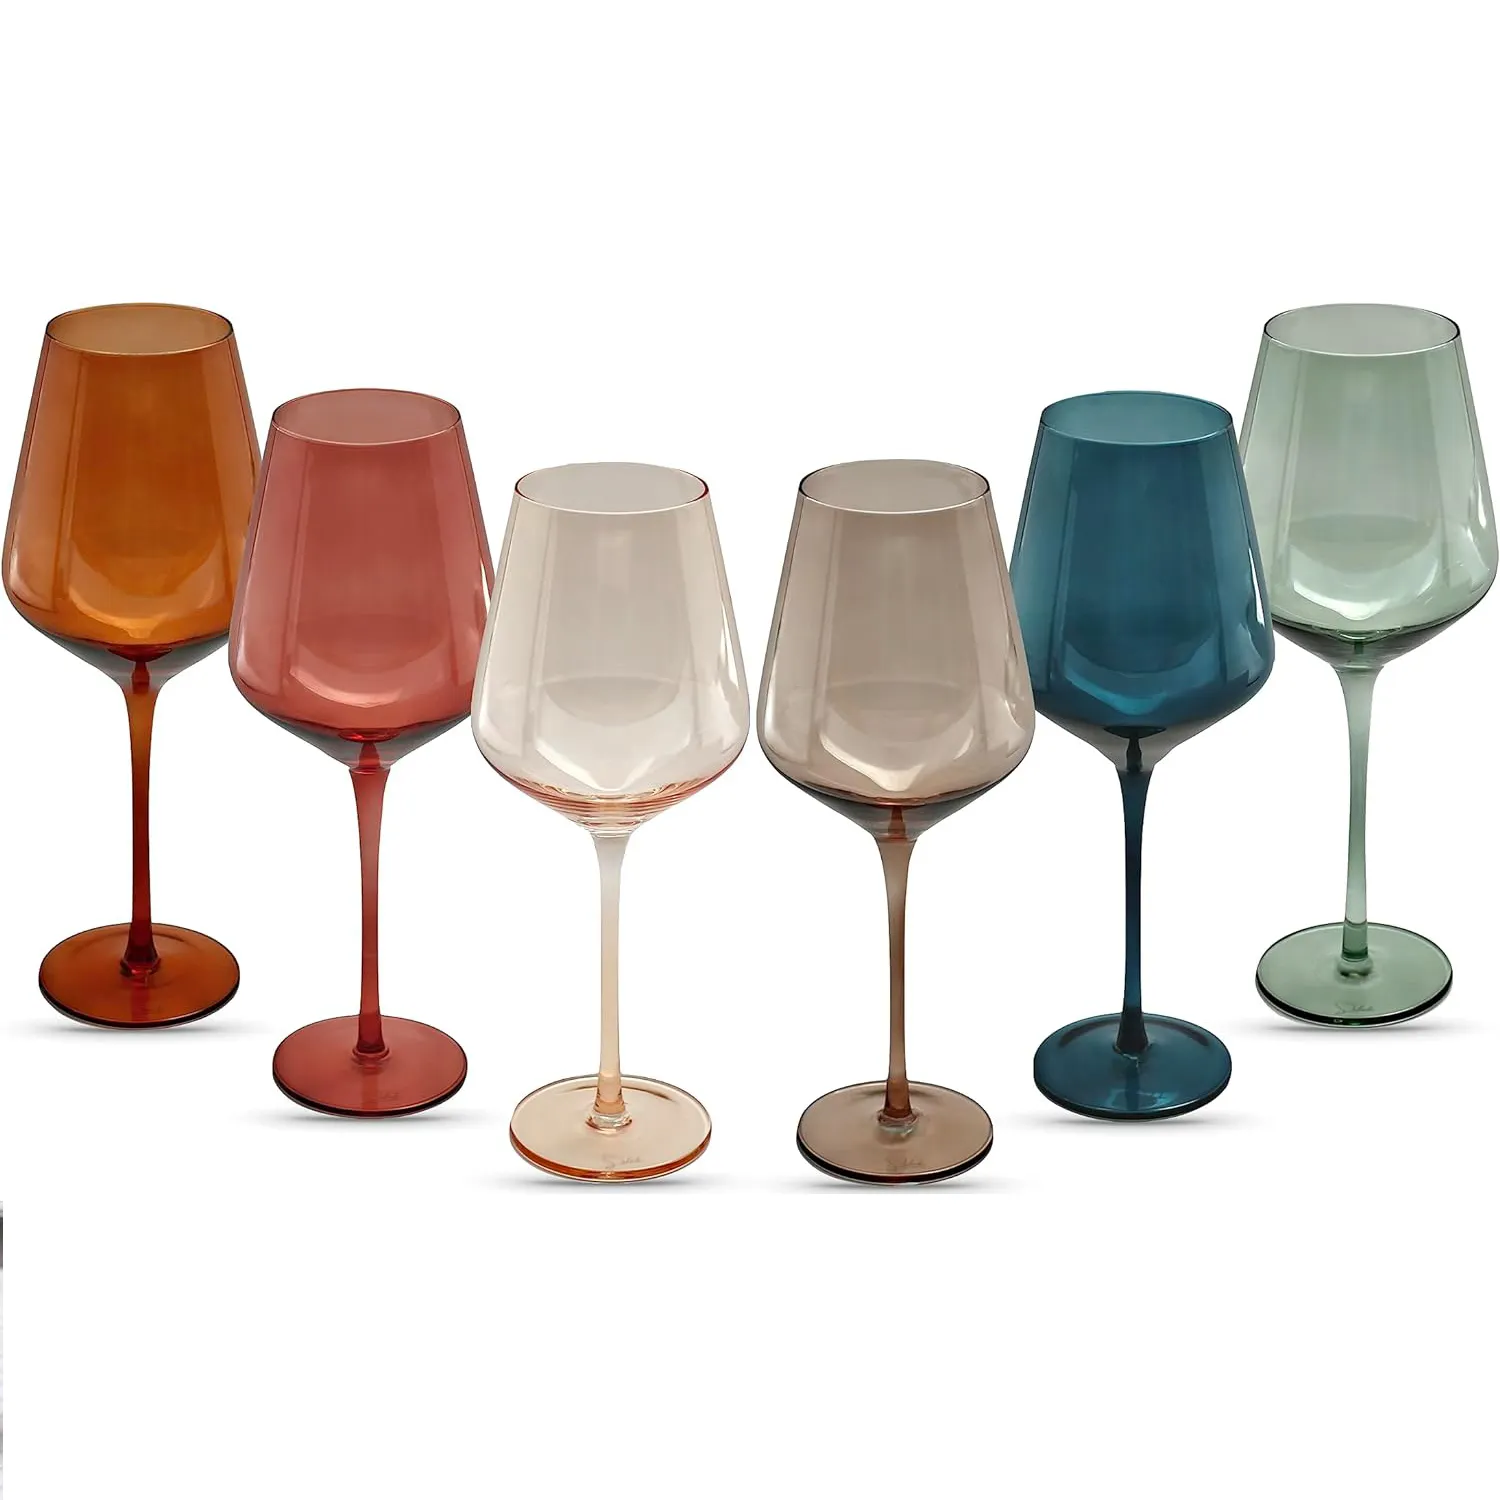 16oz berwarna anggur Set 6 bertangkai gelas Multi Warna bagus untuk semua jenis anggur dan acara